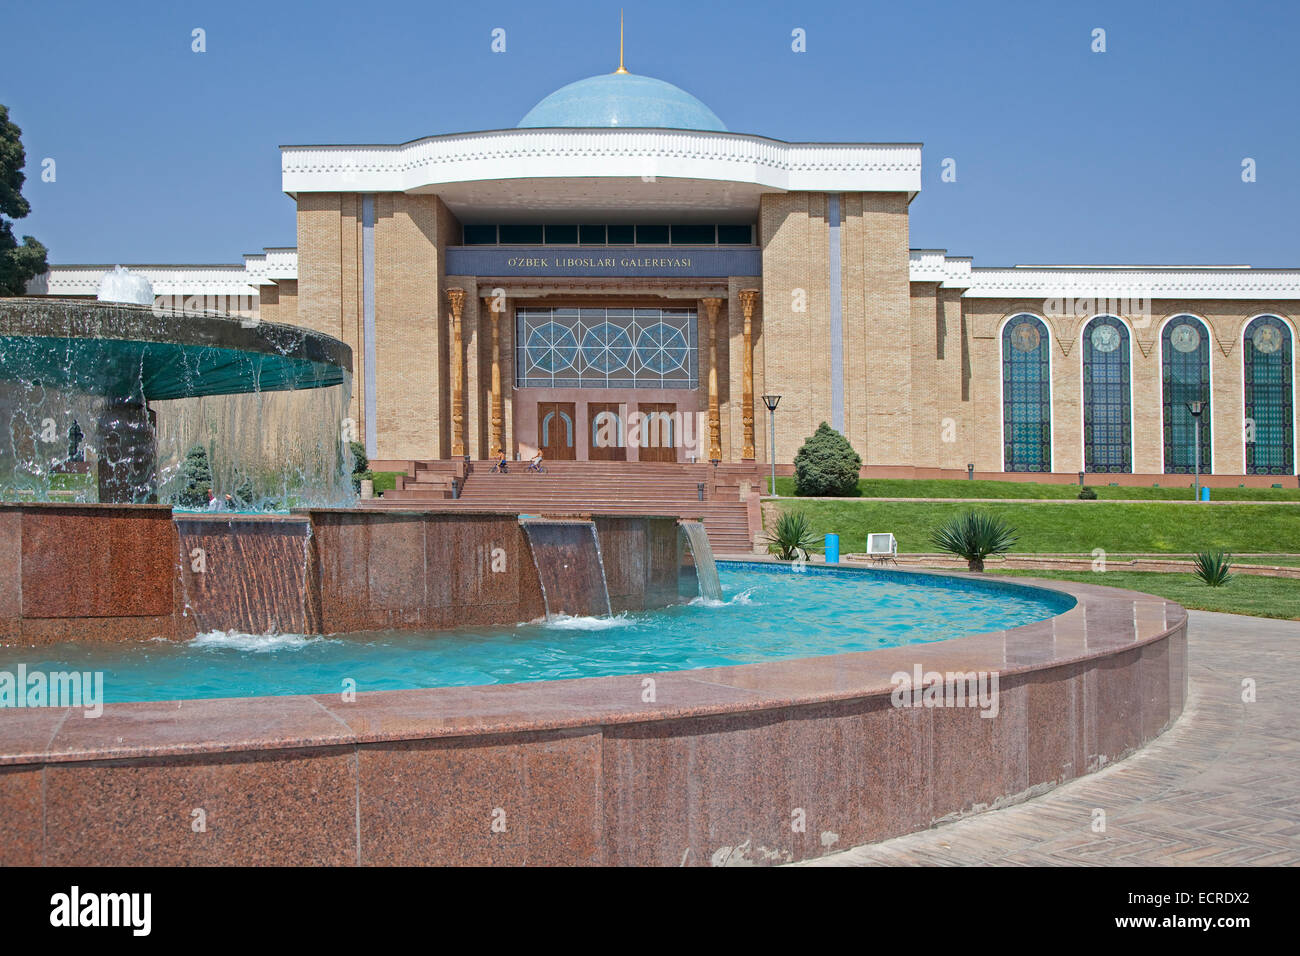 La biblioteca pubblica in stile russo architettura nella capitale Tashkent, Uzbekistan Foto Stock